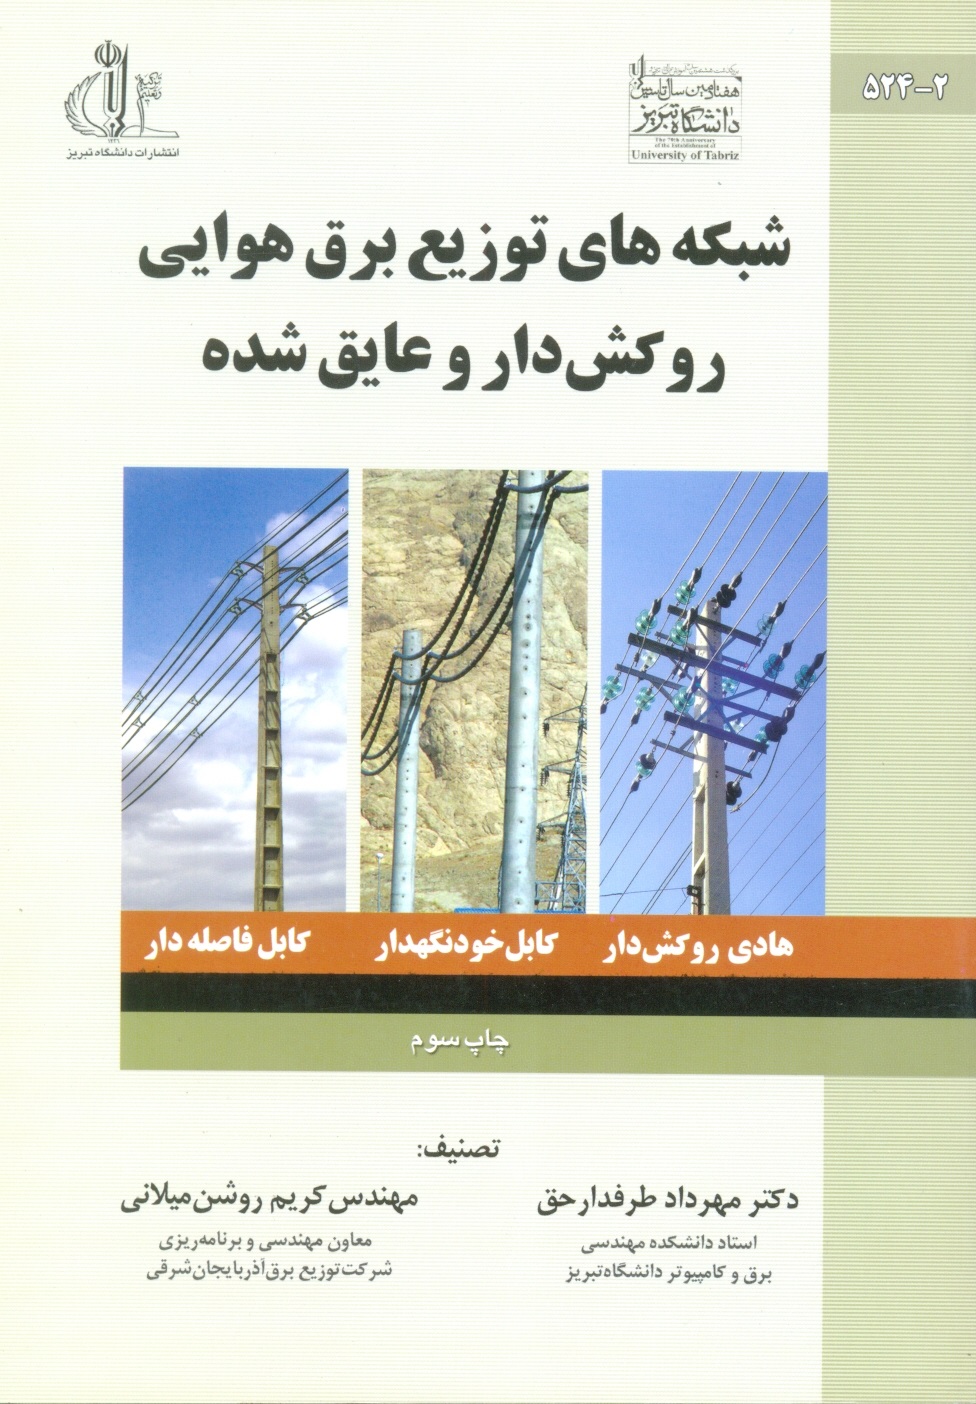 شبکه های توزیع برق هوایی روکش داروعایق شده-طرفدار حق/دانشگاه تبریز